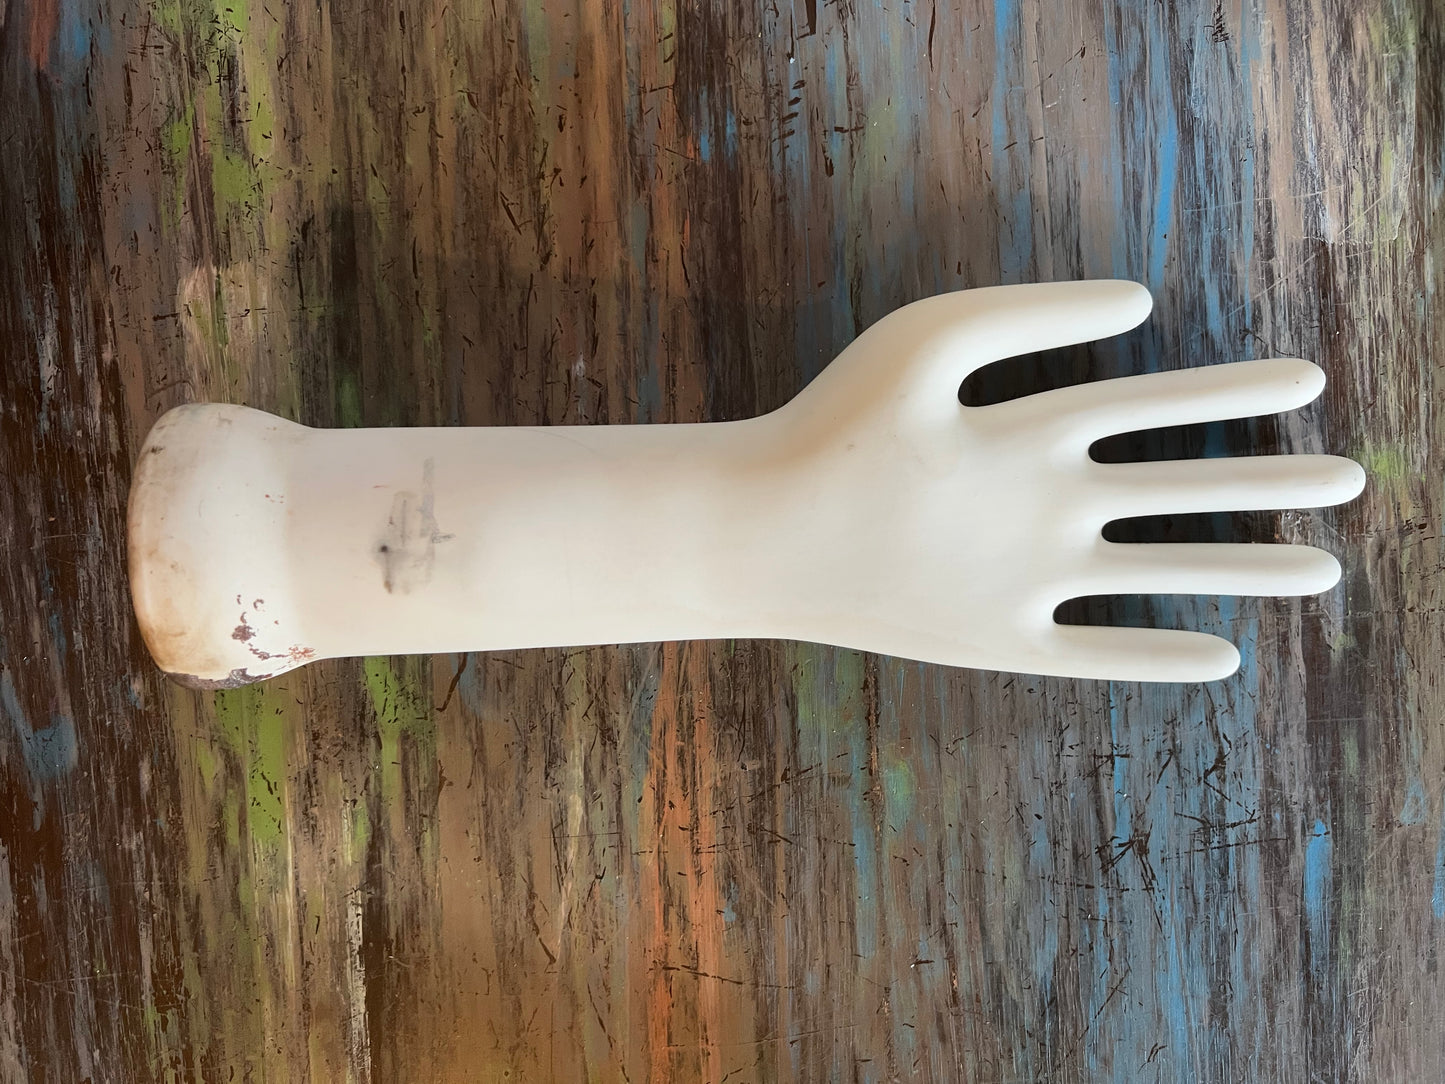 Porcelain Glove Form